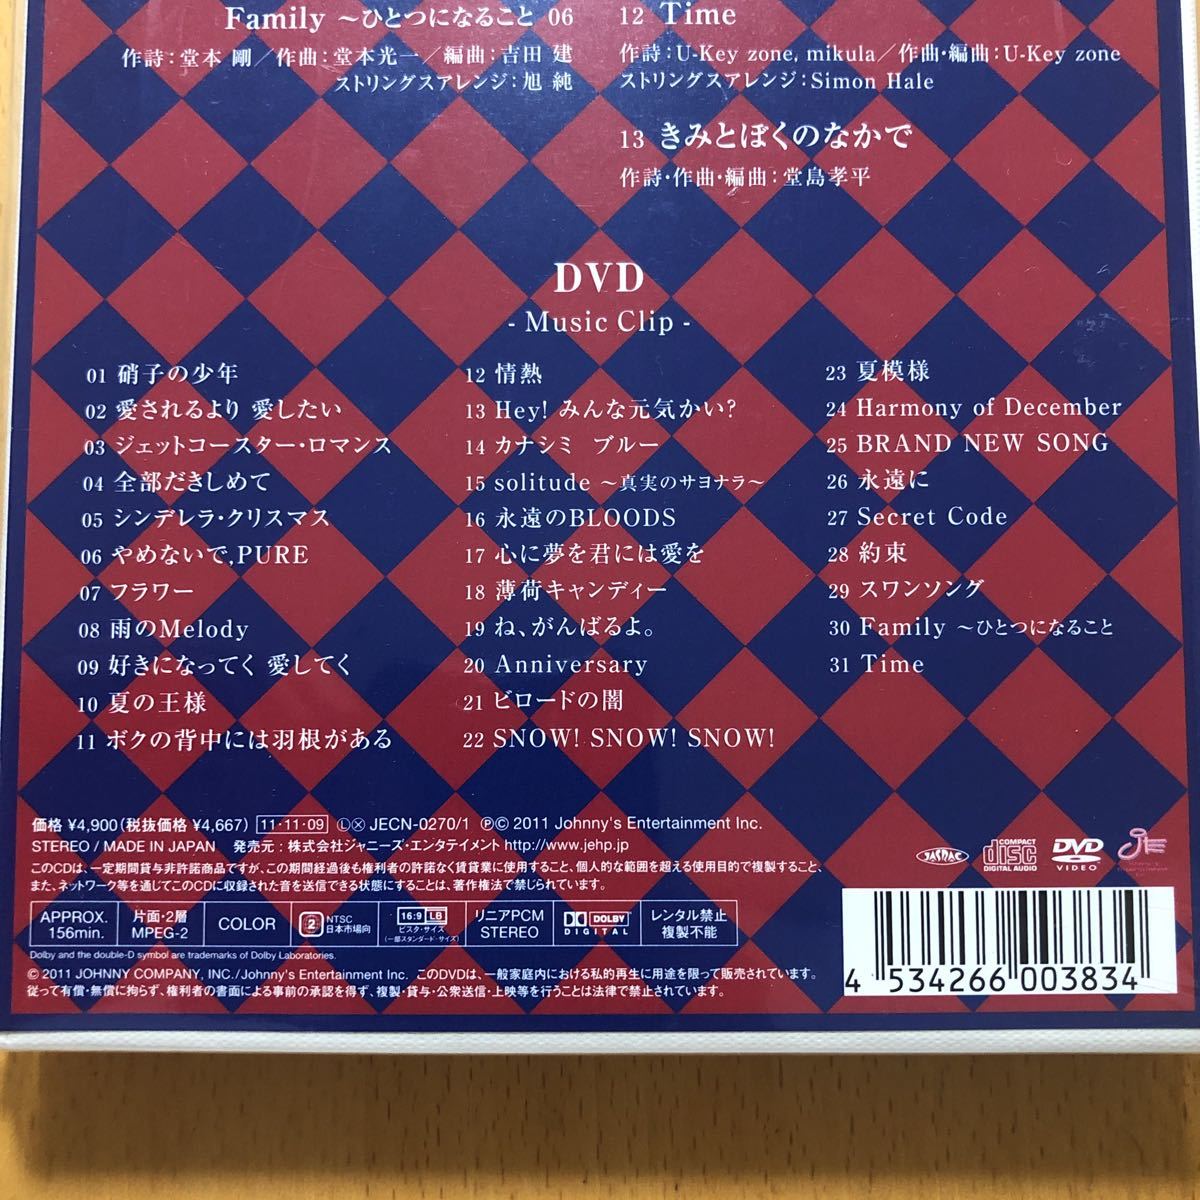  бесплатная доставка *KinKi Kids[K album] первый раз ограничение запись CD+DVD156 минут сбор *PV сборник сбор * новый товар нераспечатанный товар *171